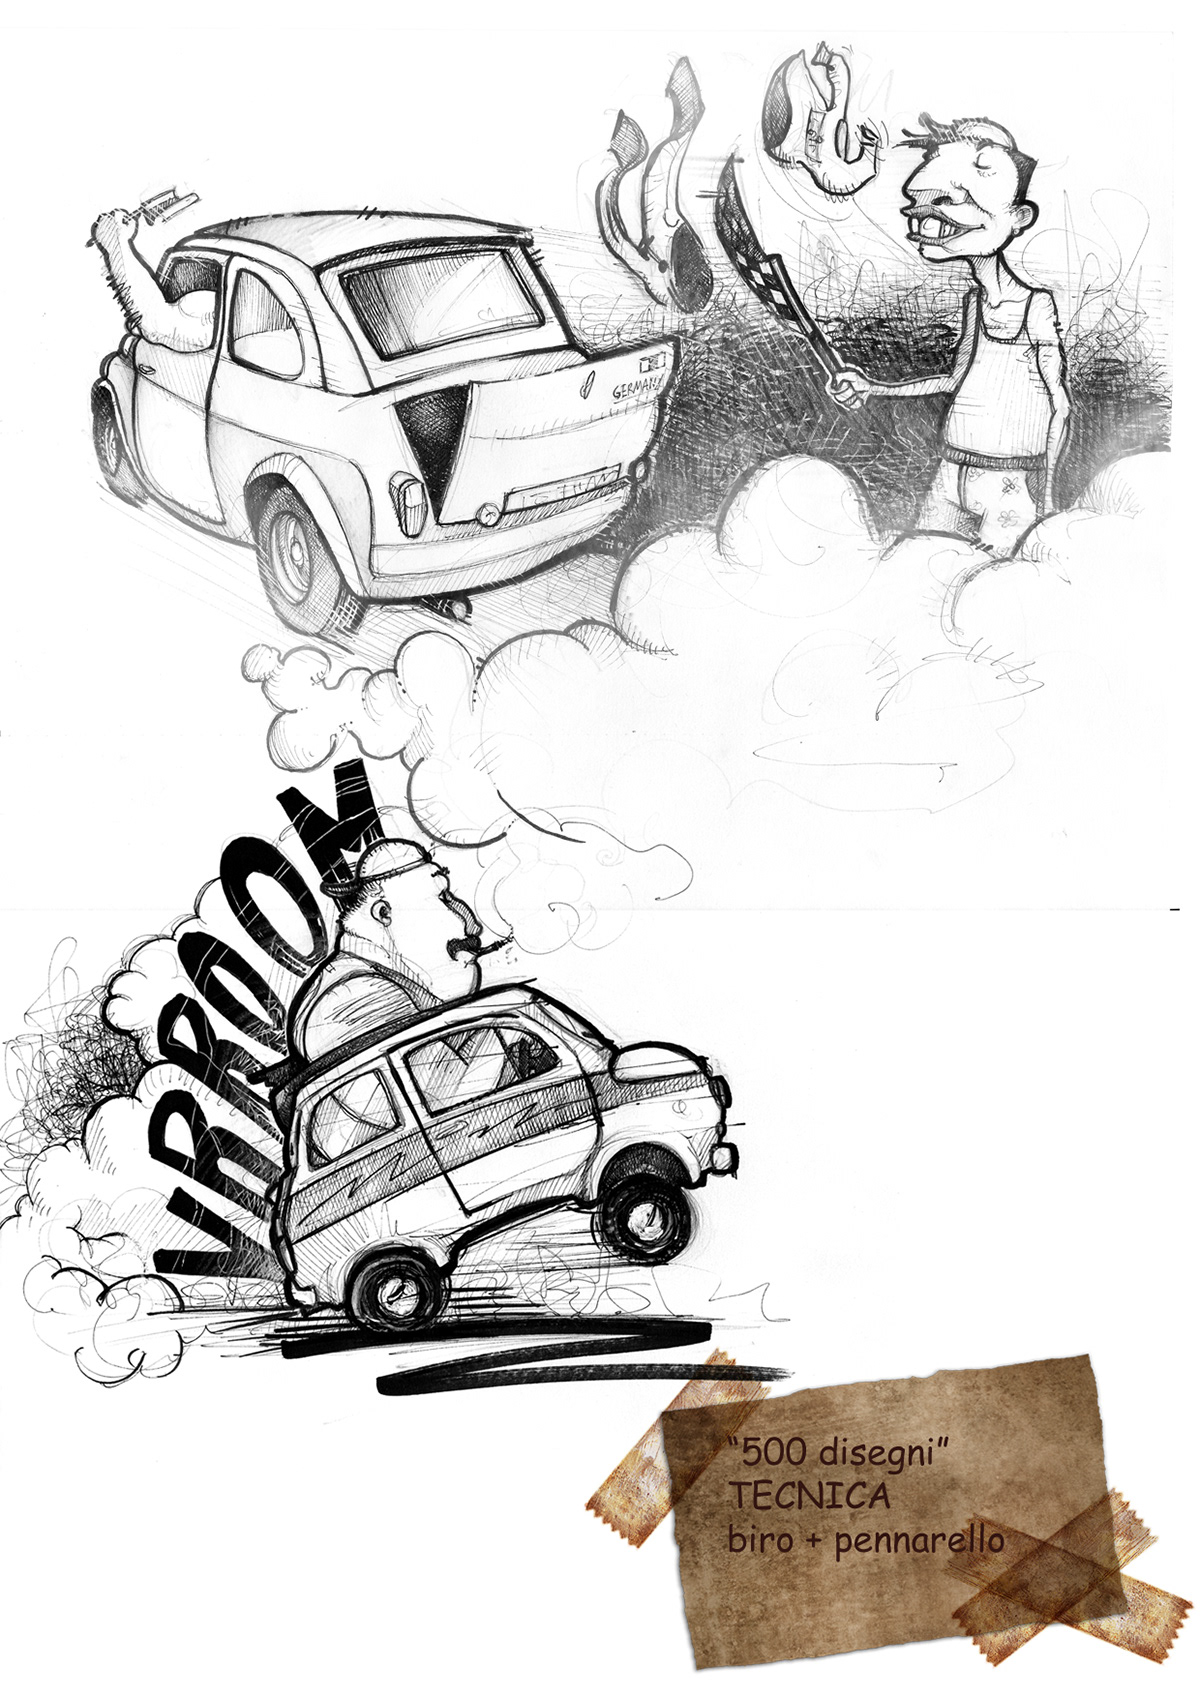 Fiat500 car comics drawings